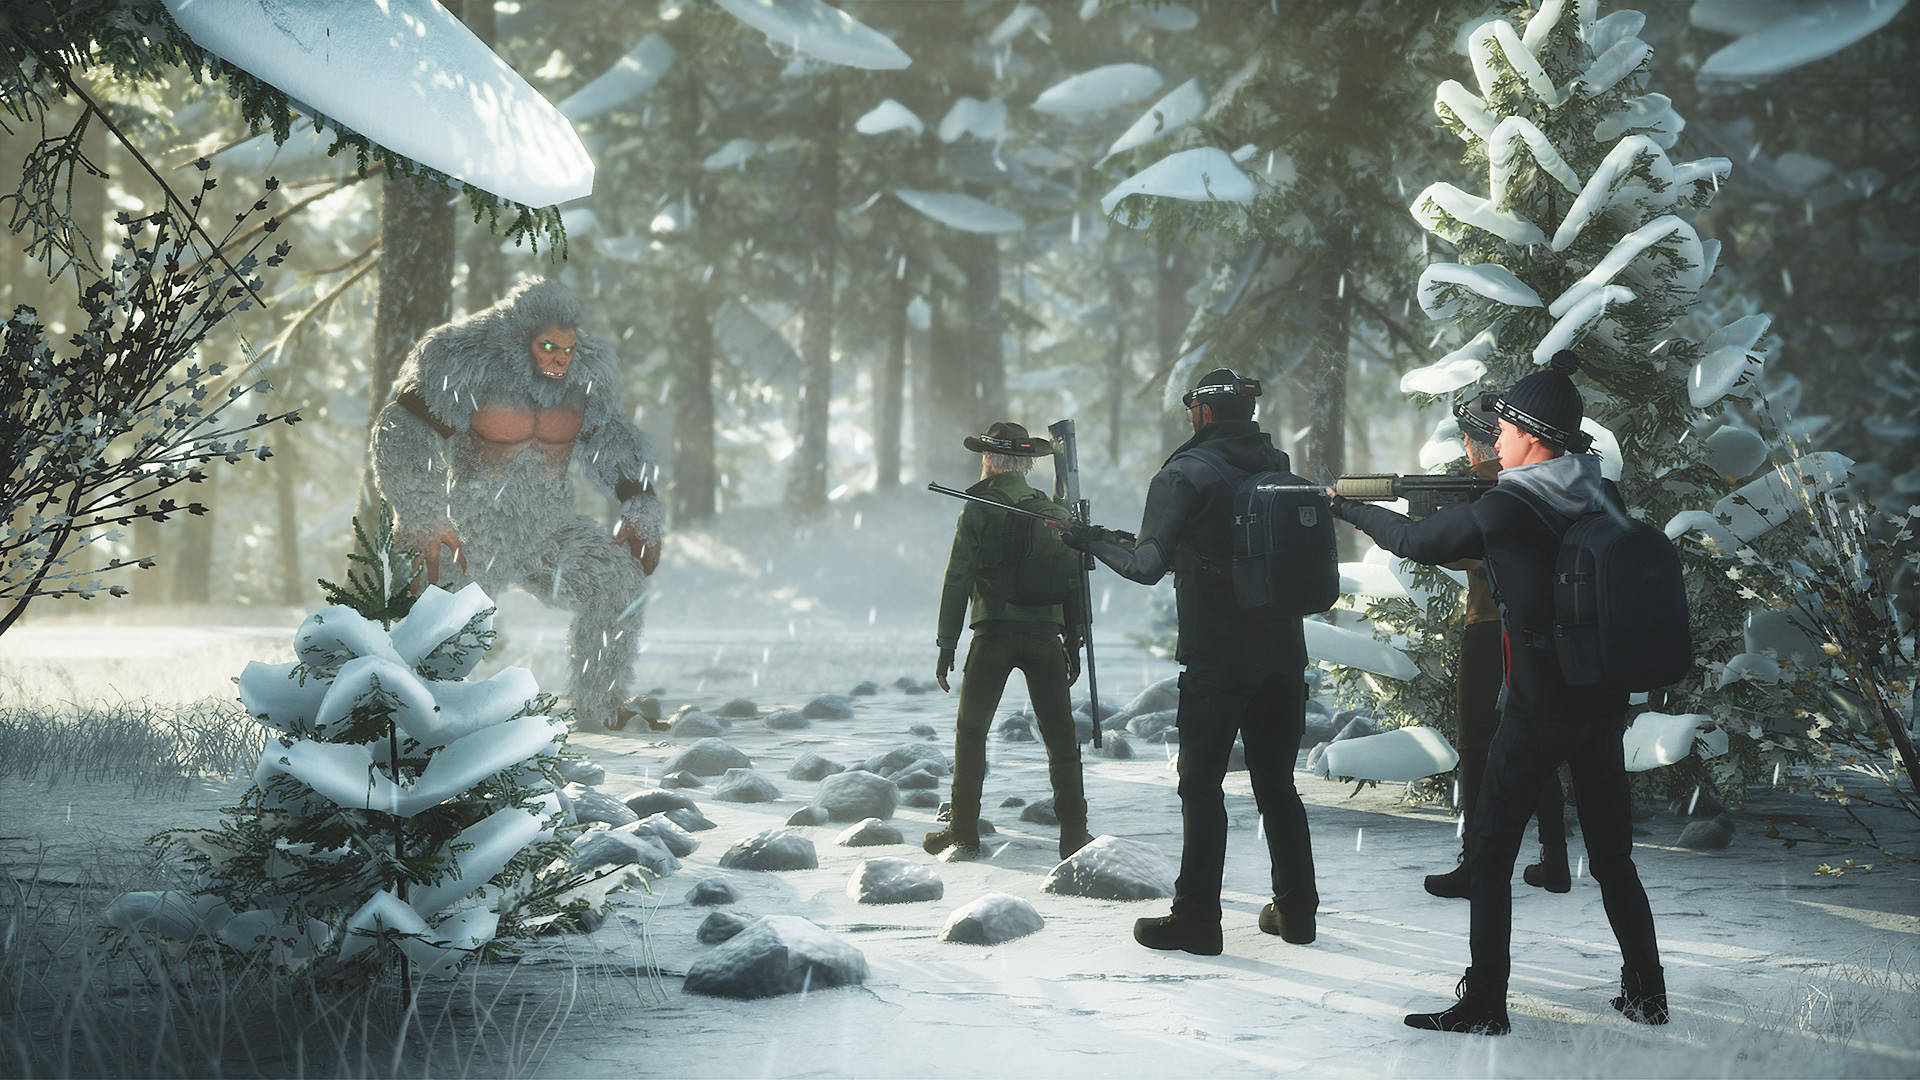 Ungrupo De Personas Está Parado En La Nieve En Un Bosque. Fondo de pantalla